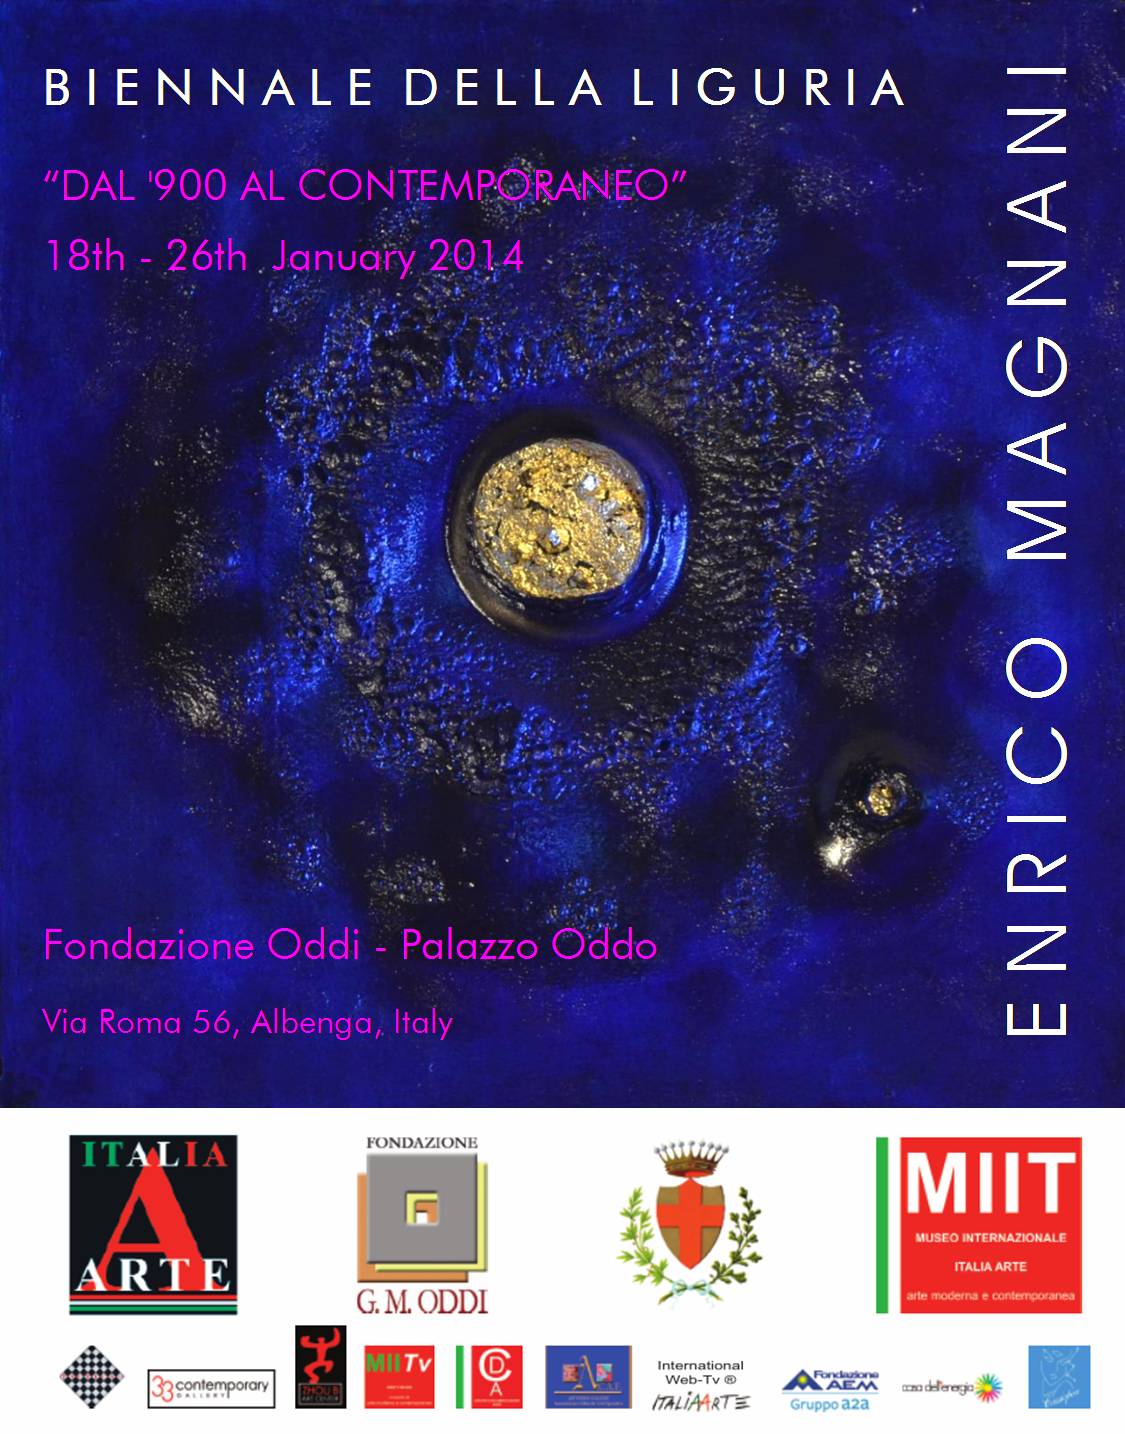 Enrico Magnani, albenga, fondazione oddi, oddi, palazzo oddo, biennale, biennial